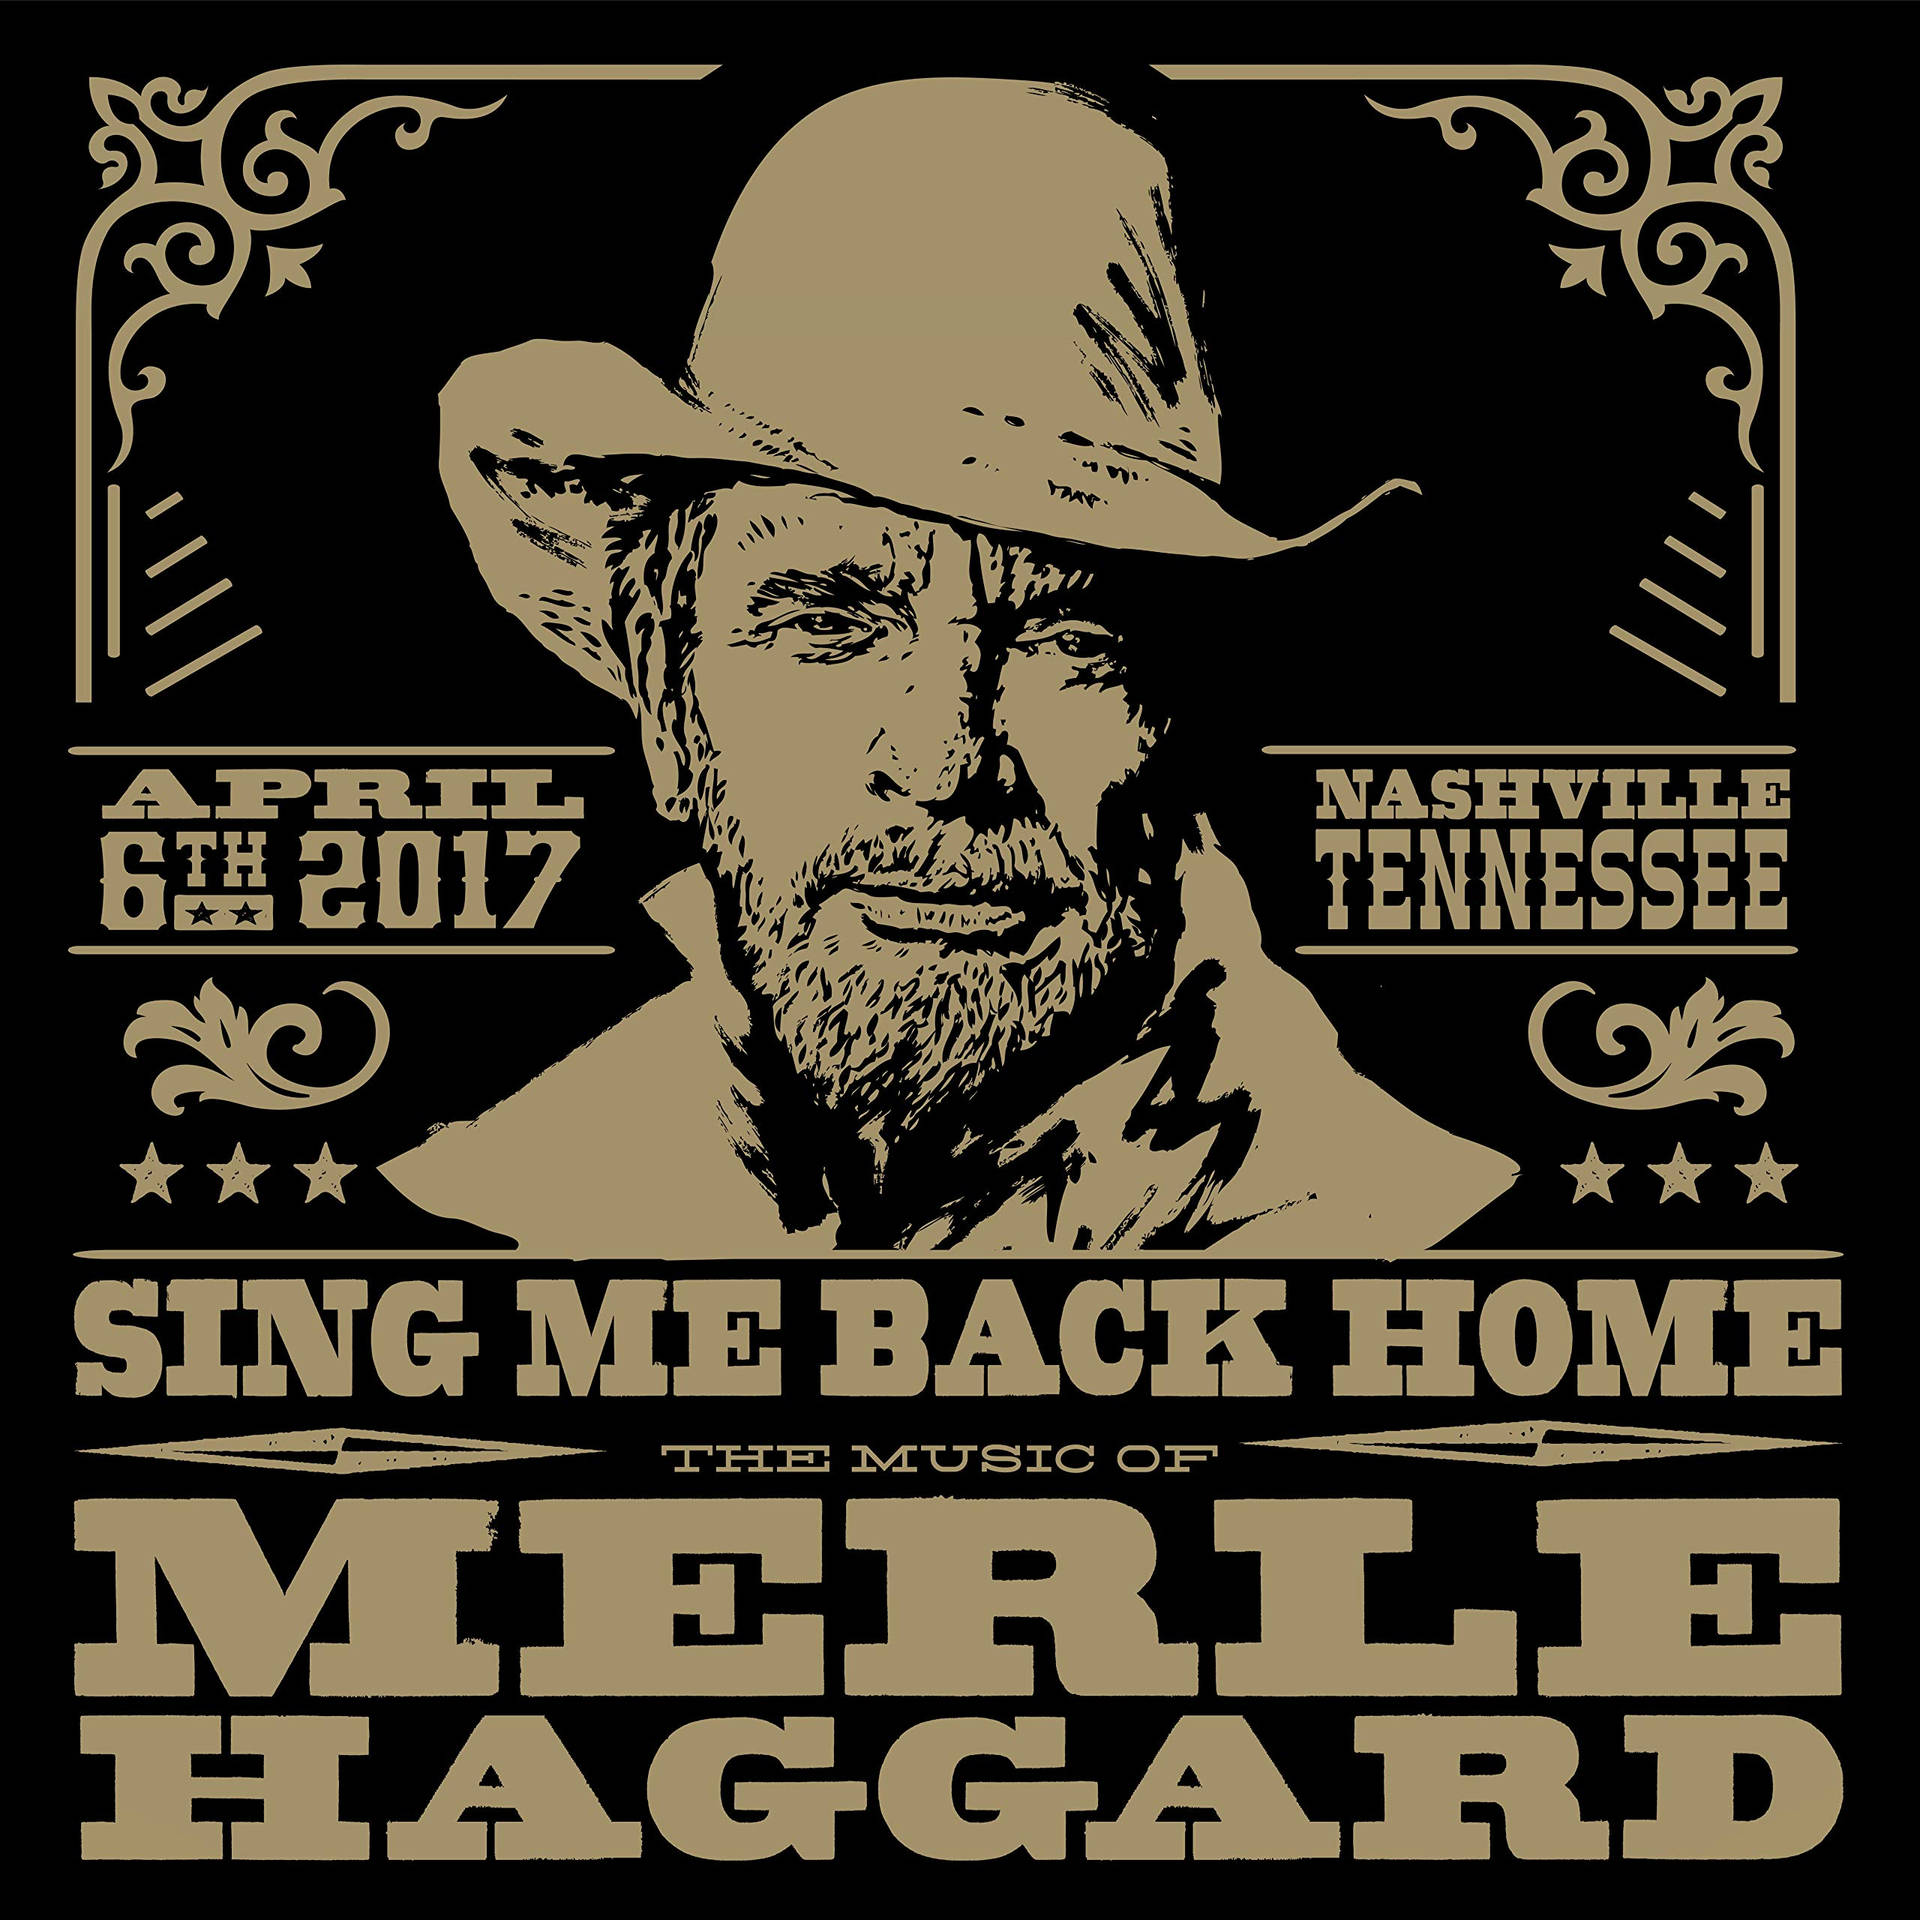 Skickatillbaka Mig Hem, Merle Haggard - (note: 